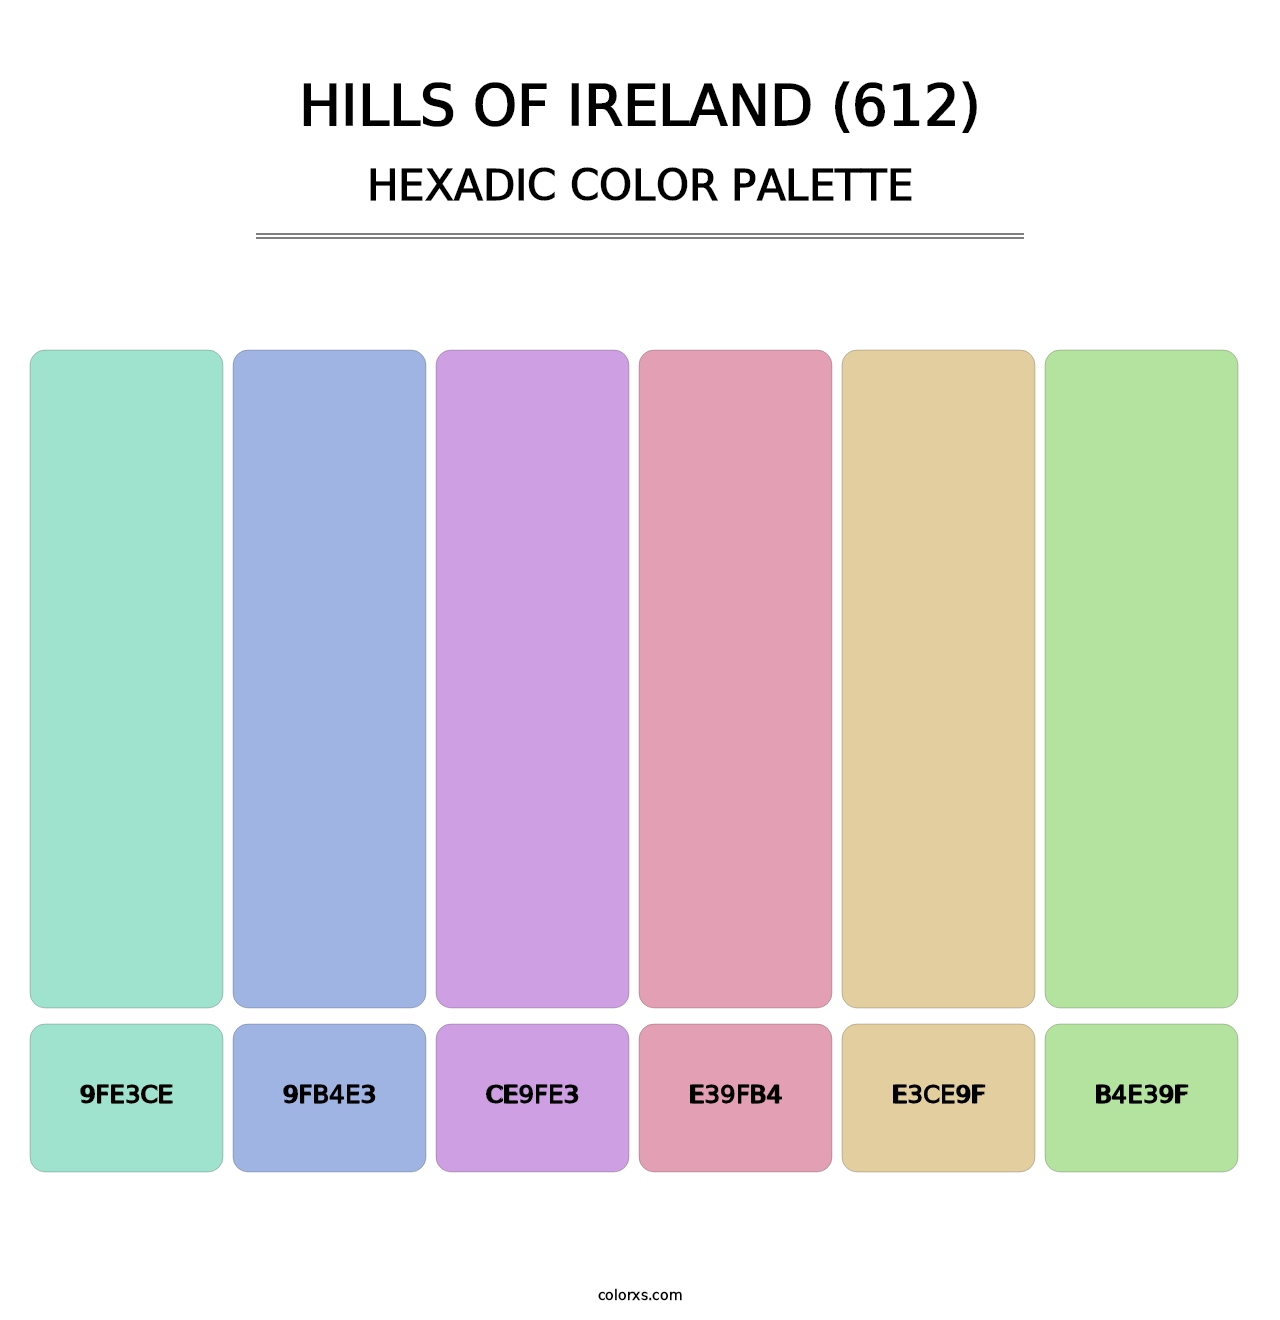 Hills of Ireland (612) - Hexadic Color Palette